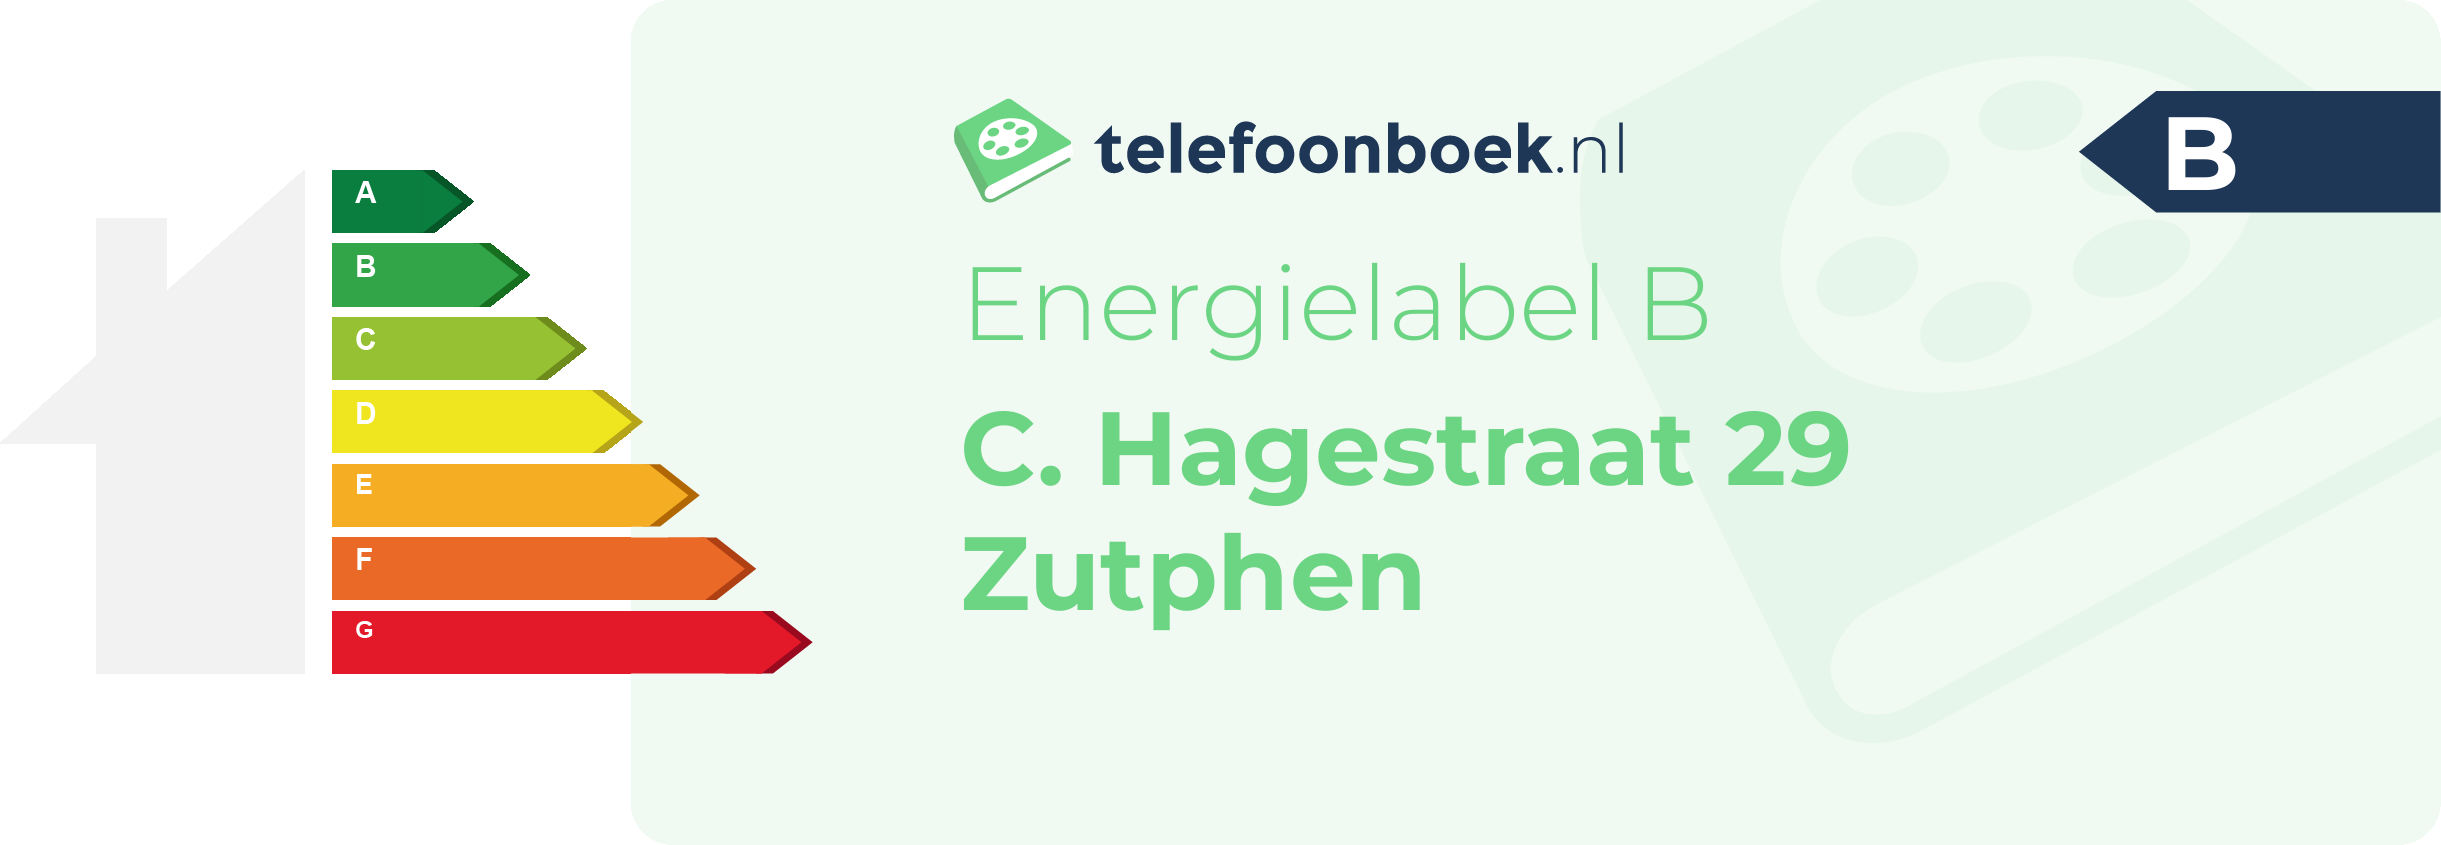 Energielabel C. Hagestraat 29 Zutphen